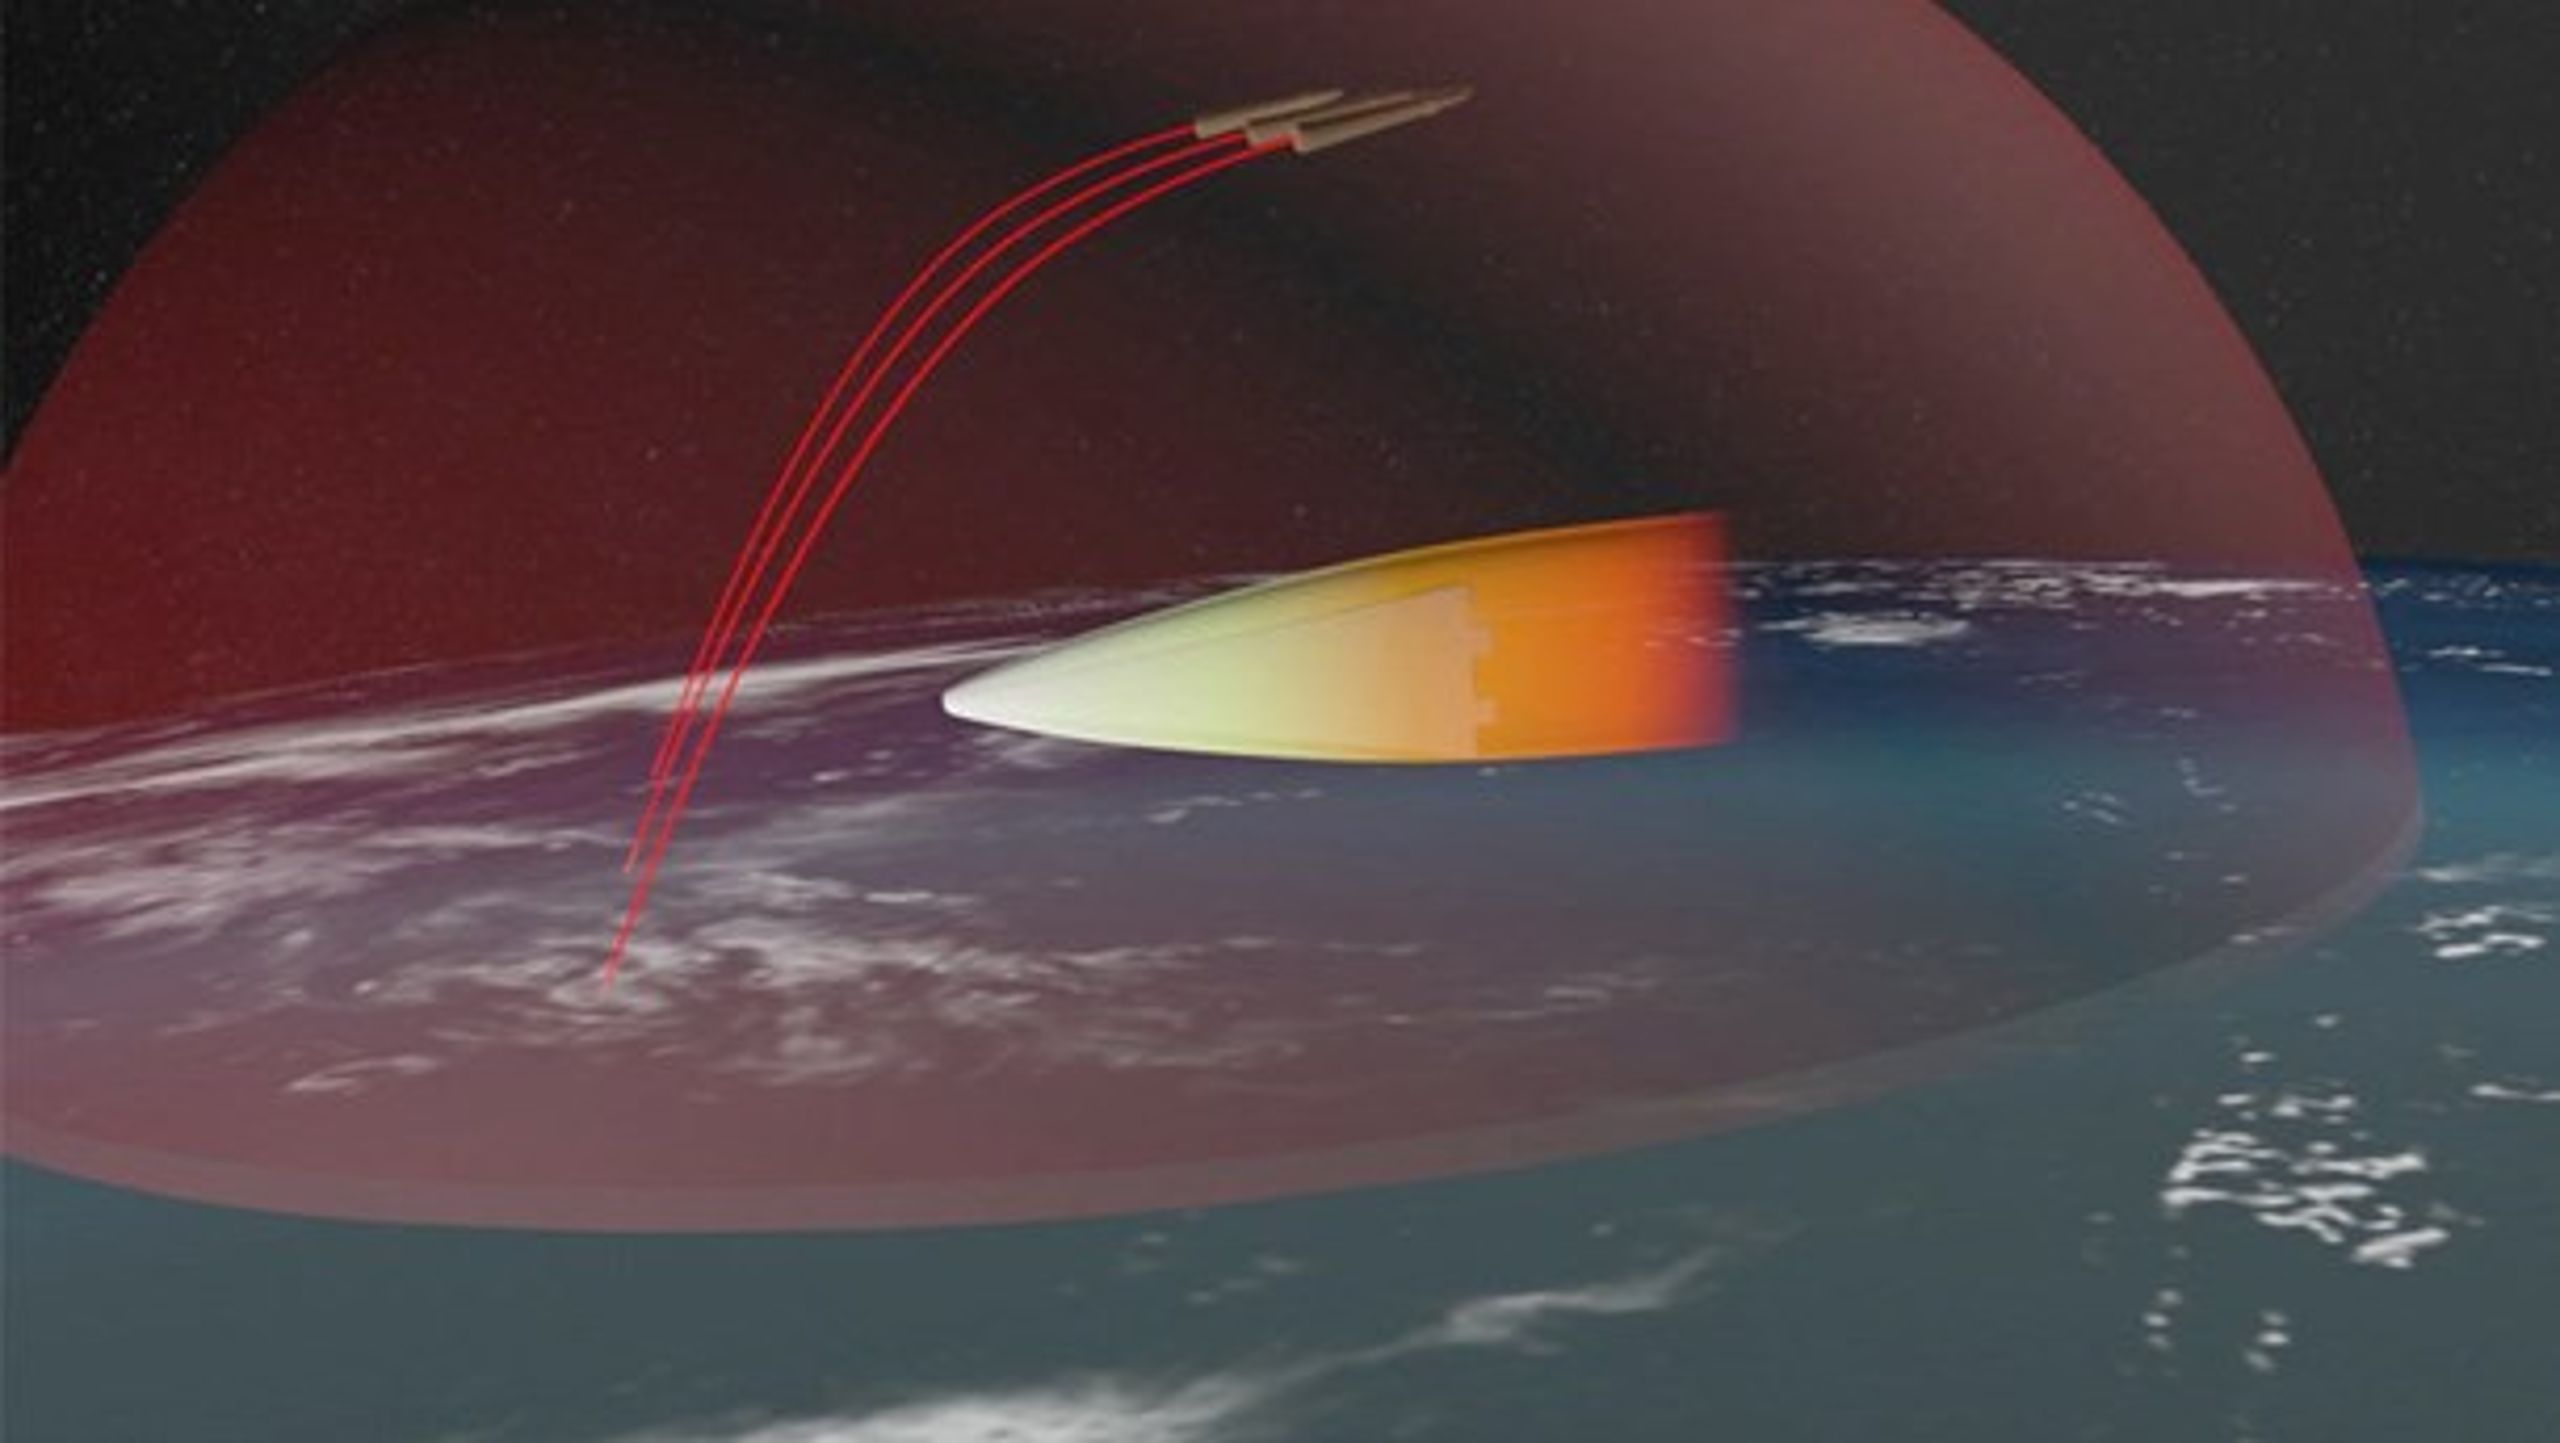 Rusland er ved at udvikle det hypersoniske Avangard-missil,
der ifølge eksperter ikke kan nedskydes af vestligt missilforsvar.